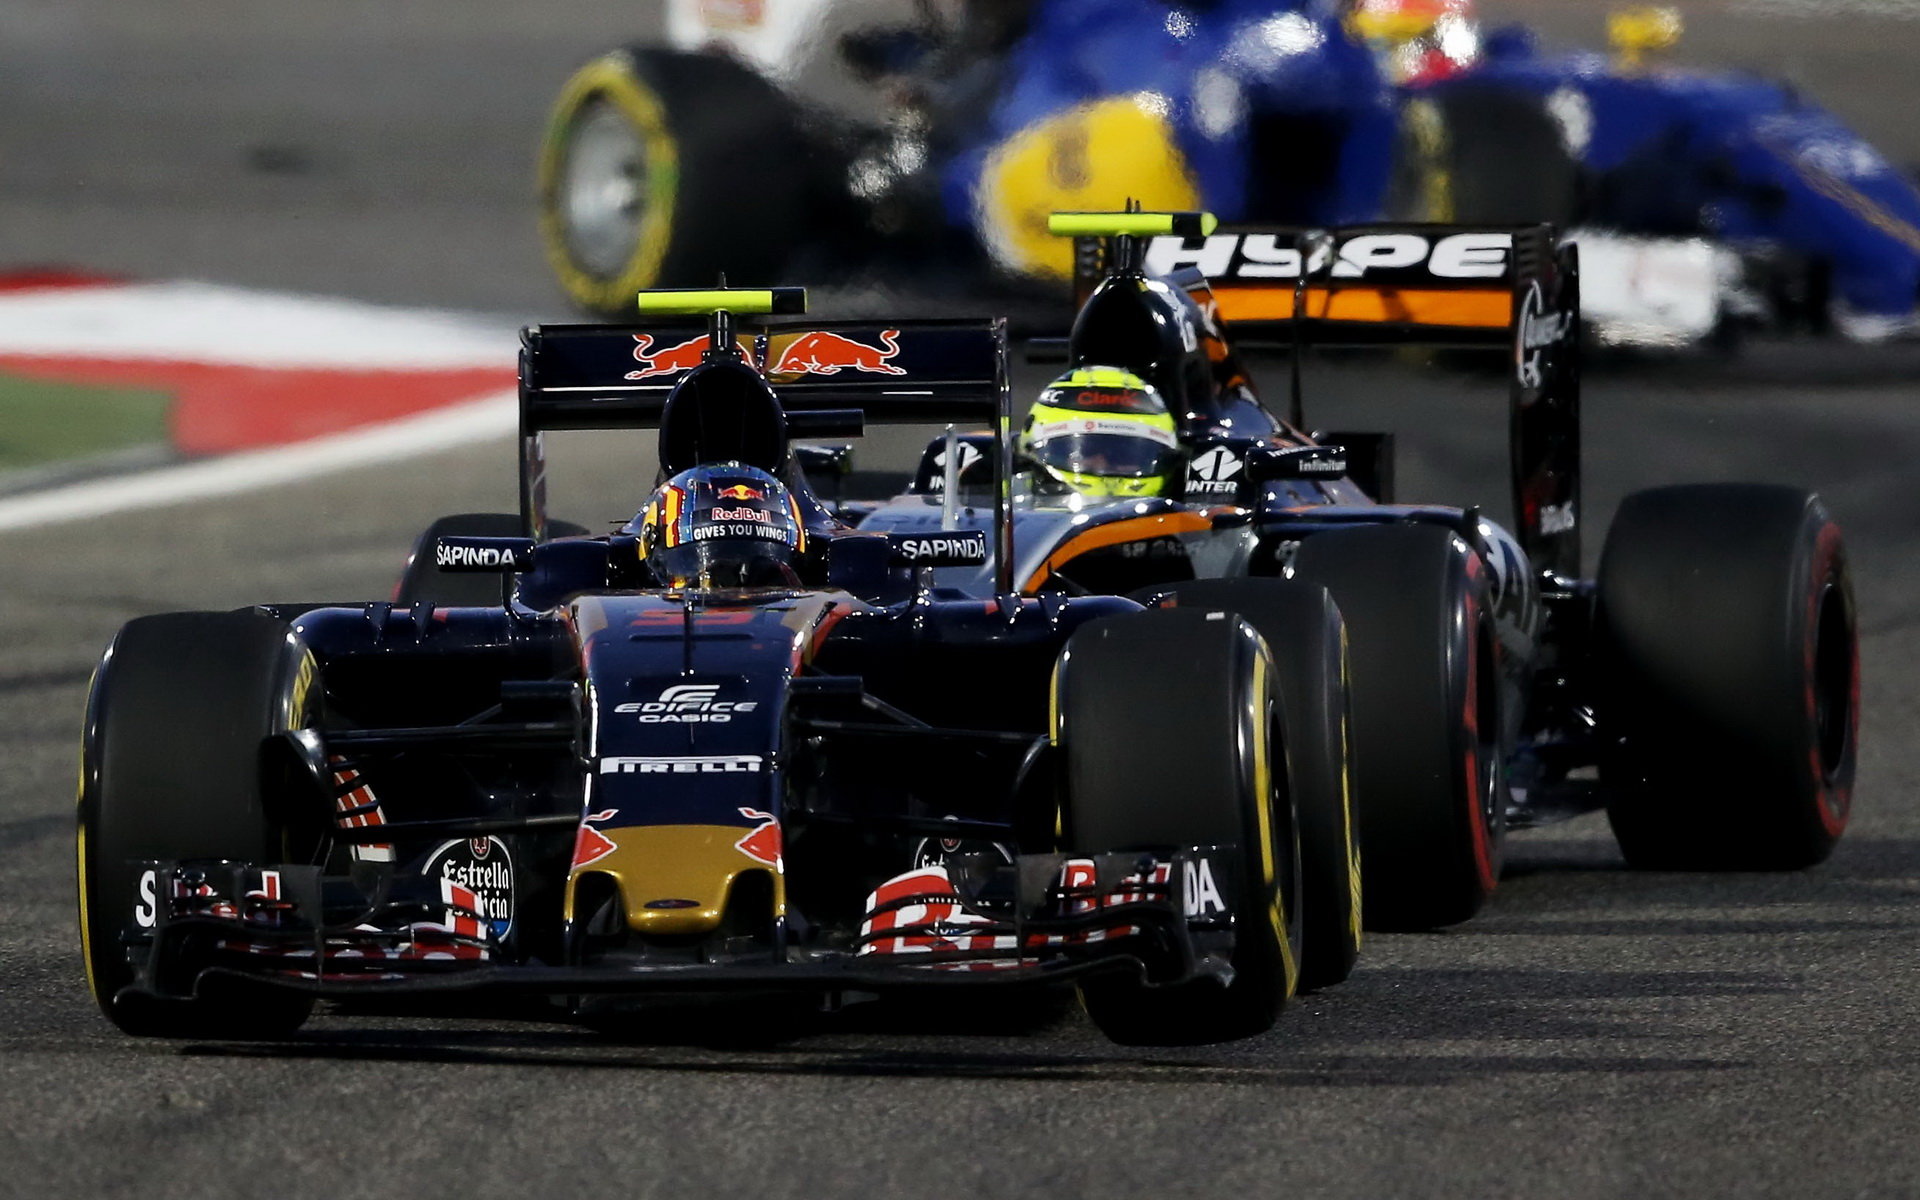 Carlos Sainz po kolizi s Perézem s prasklou zadní pneumatikou v závodě v Bahrajnu